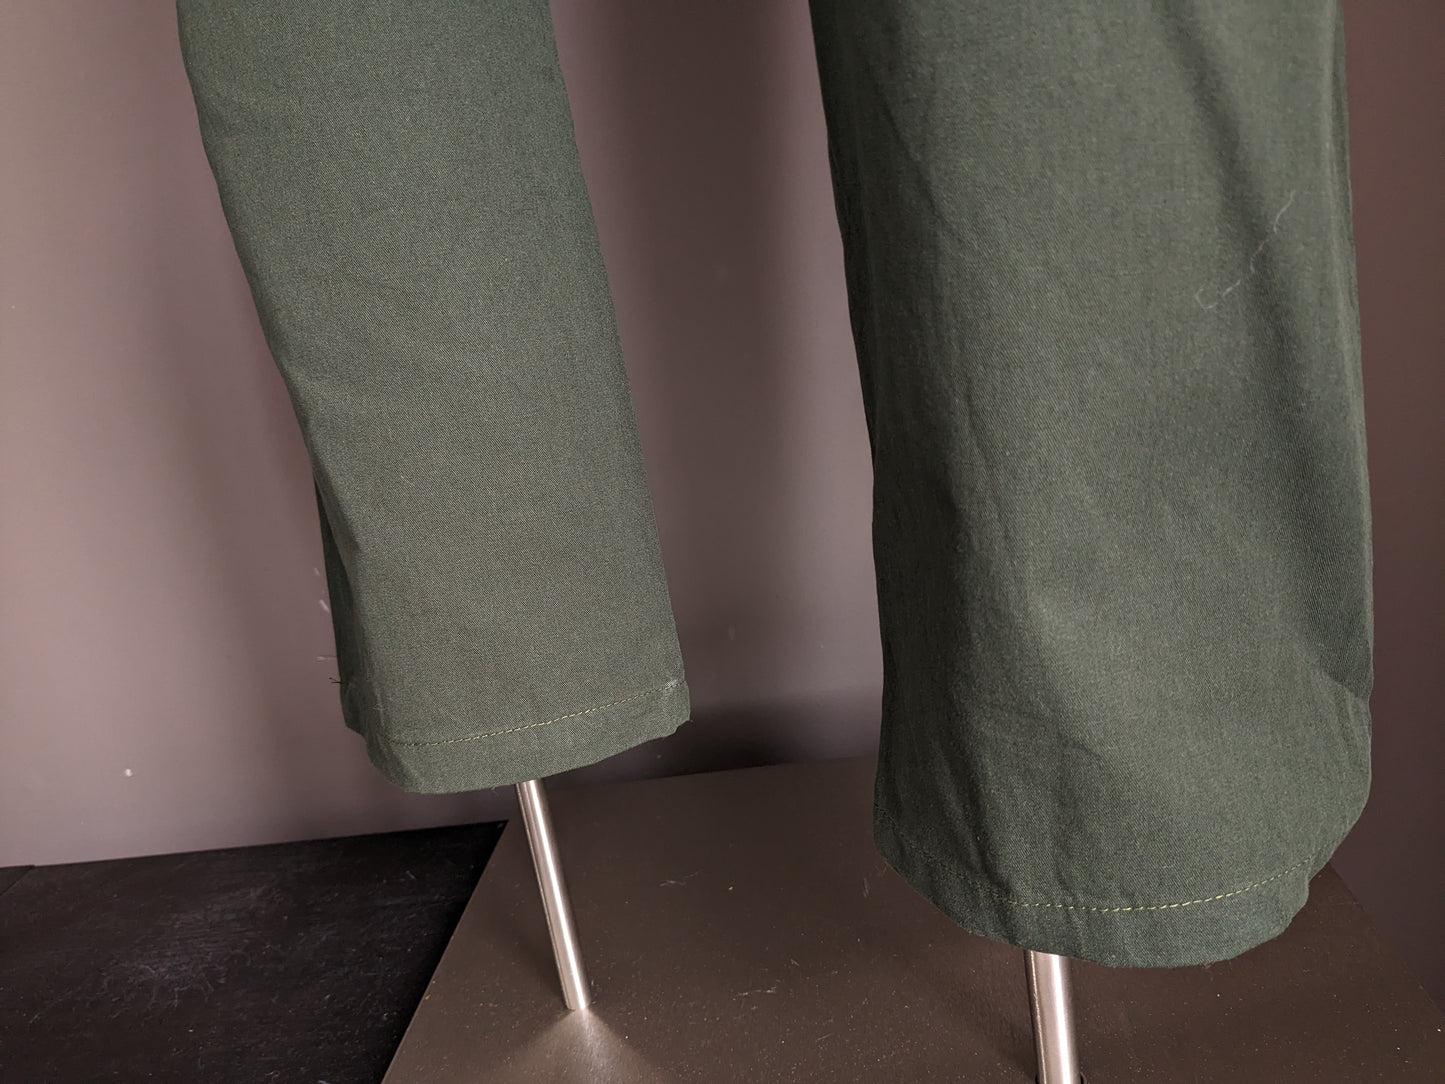 Merkloos Casual broek met elastische band. Groen gekleurd. Maat M